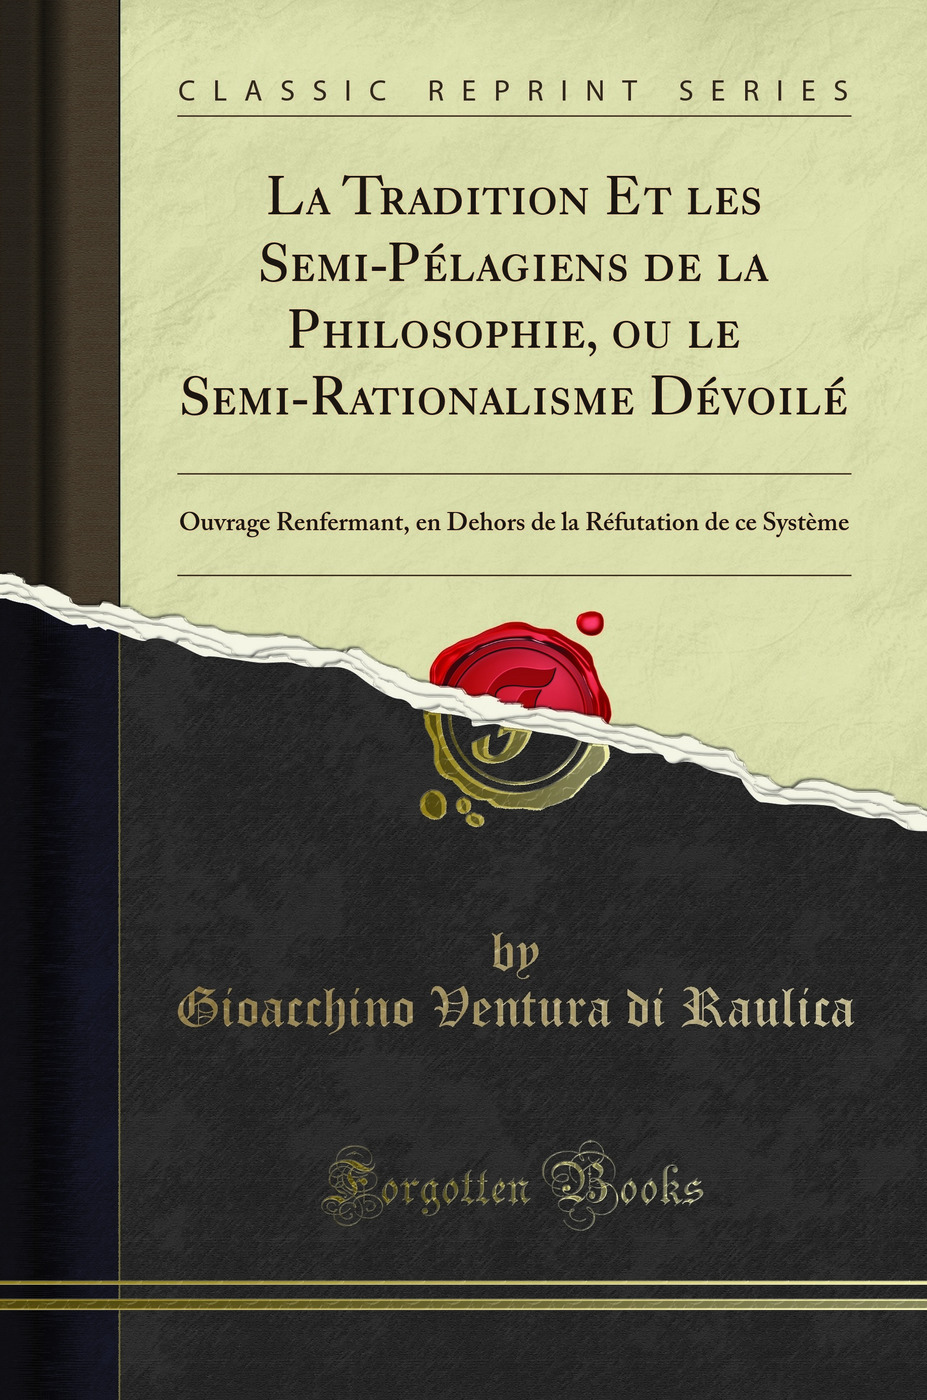 La Tradition Et les Semi-PÃ lagiens de la Philosophie, ou le Semi-Rationalisme - Gioacchino Ventura di Raulica